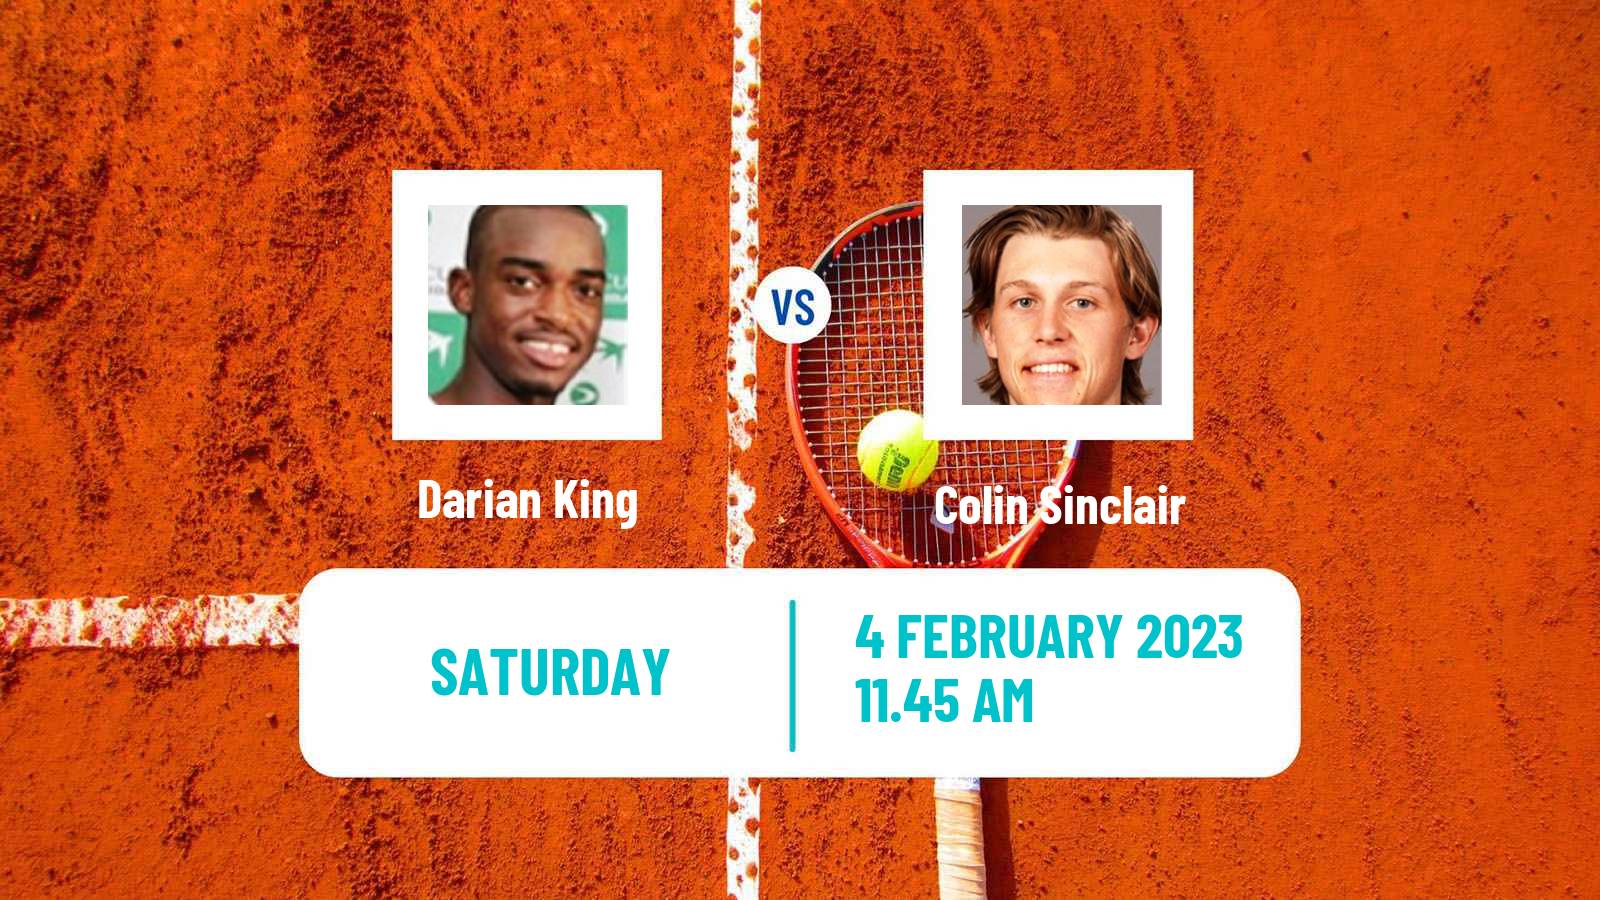 Tennis Davis Cup World Group II Darian King - Colin Sinclair